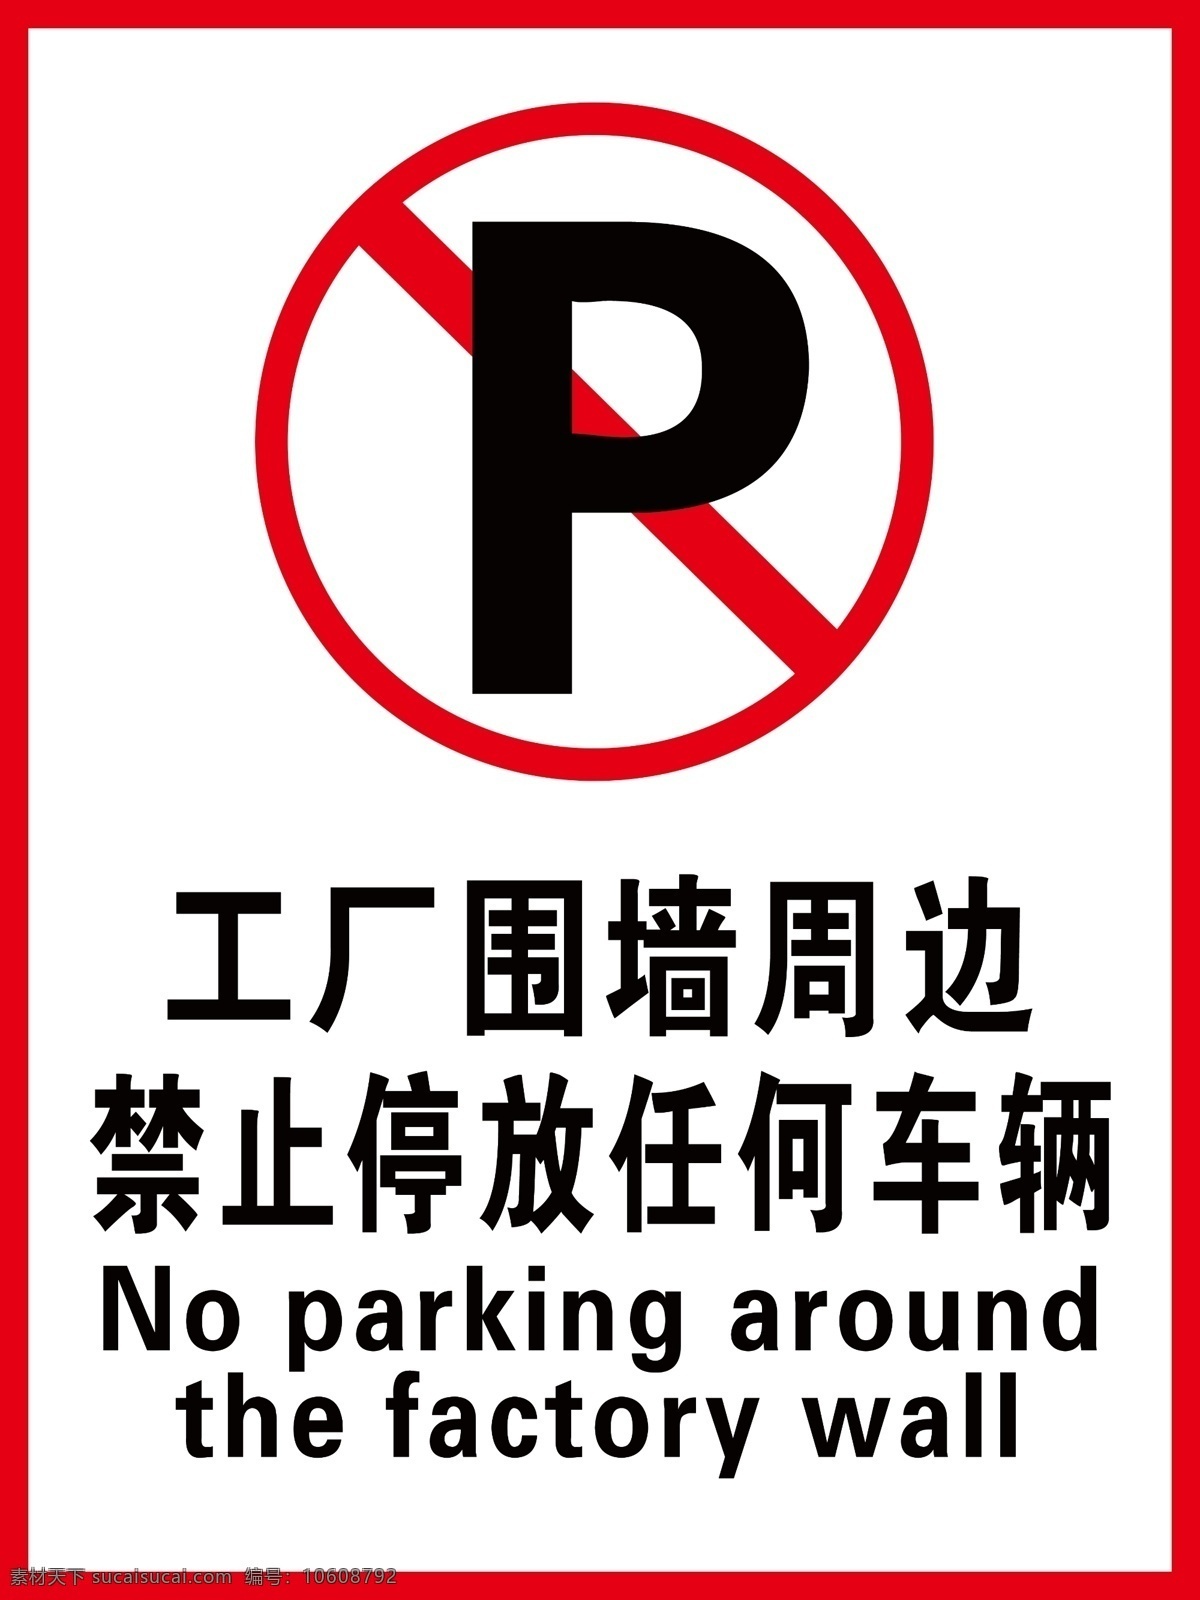 禁止停放车辆 安全标志 警示牌 工厂围墙周边 禁止停车 分层